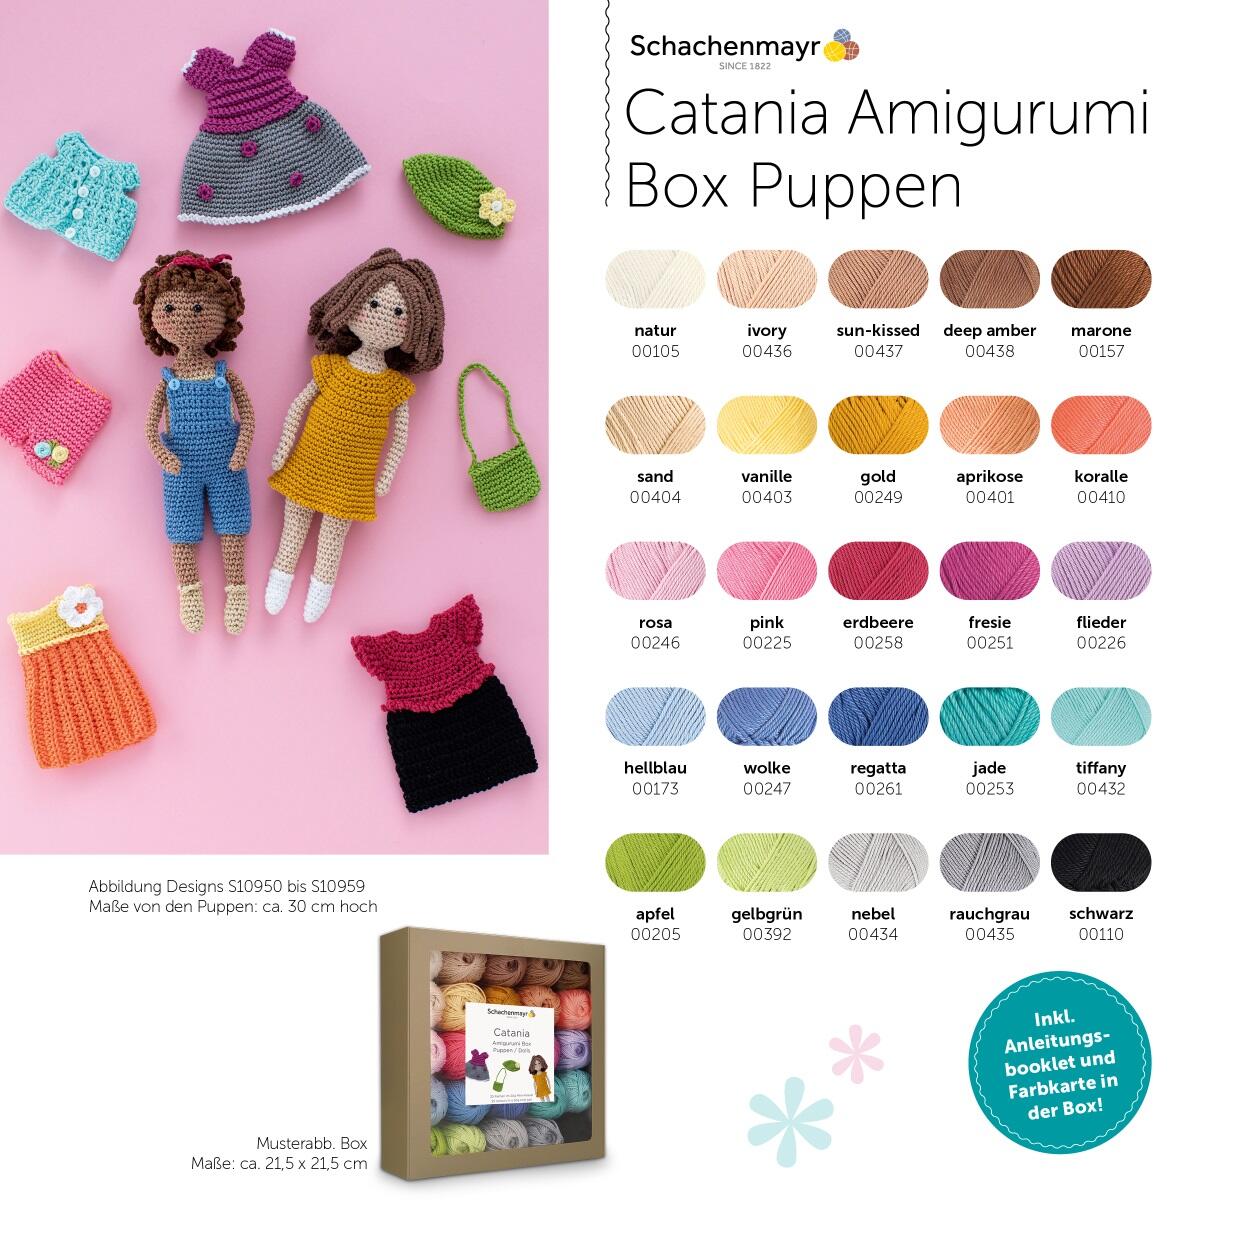 Schachenmayr Catania Amigurumi Box Puppen Farbübesicht und Musterbeispiele